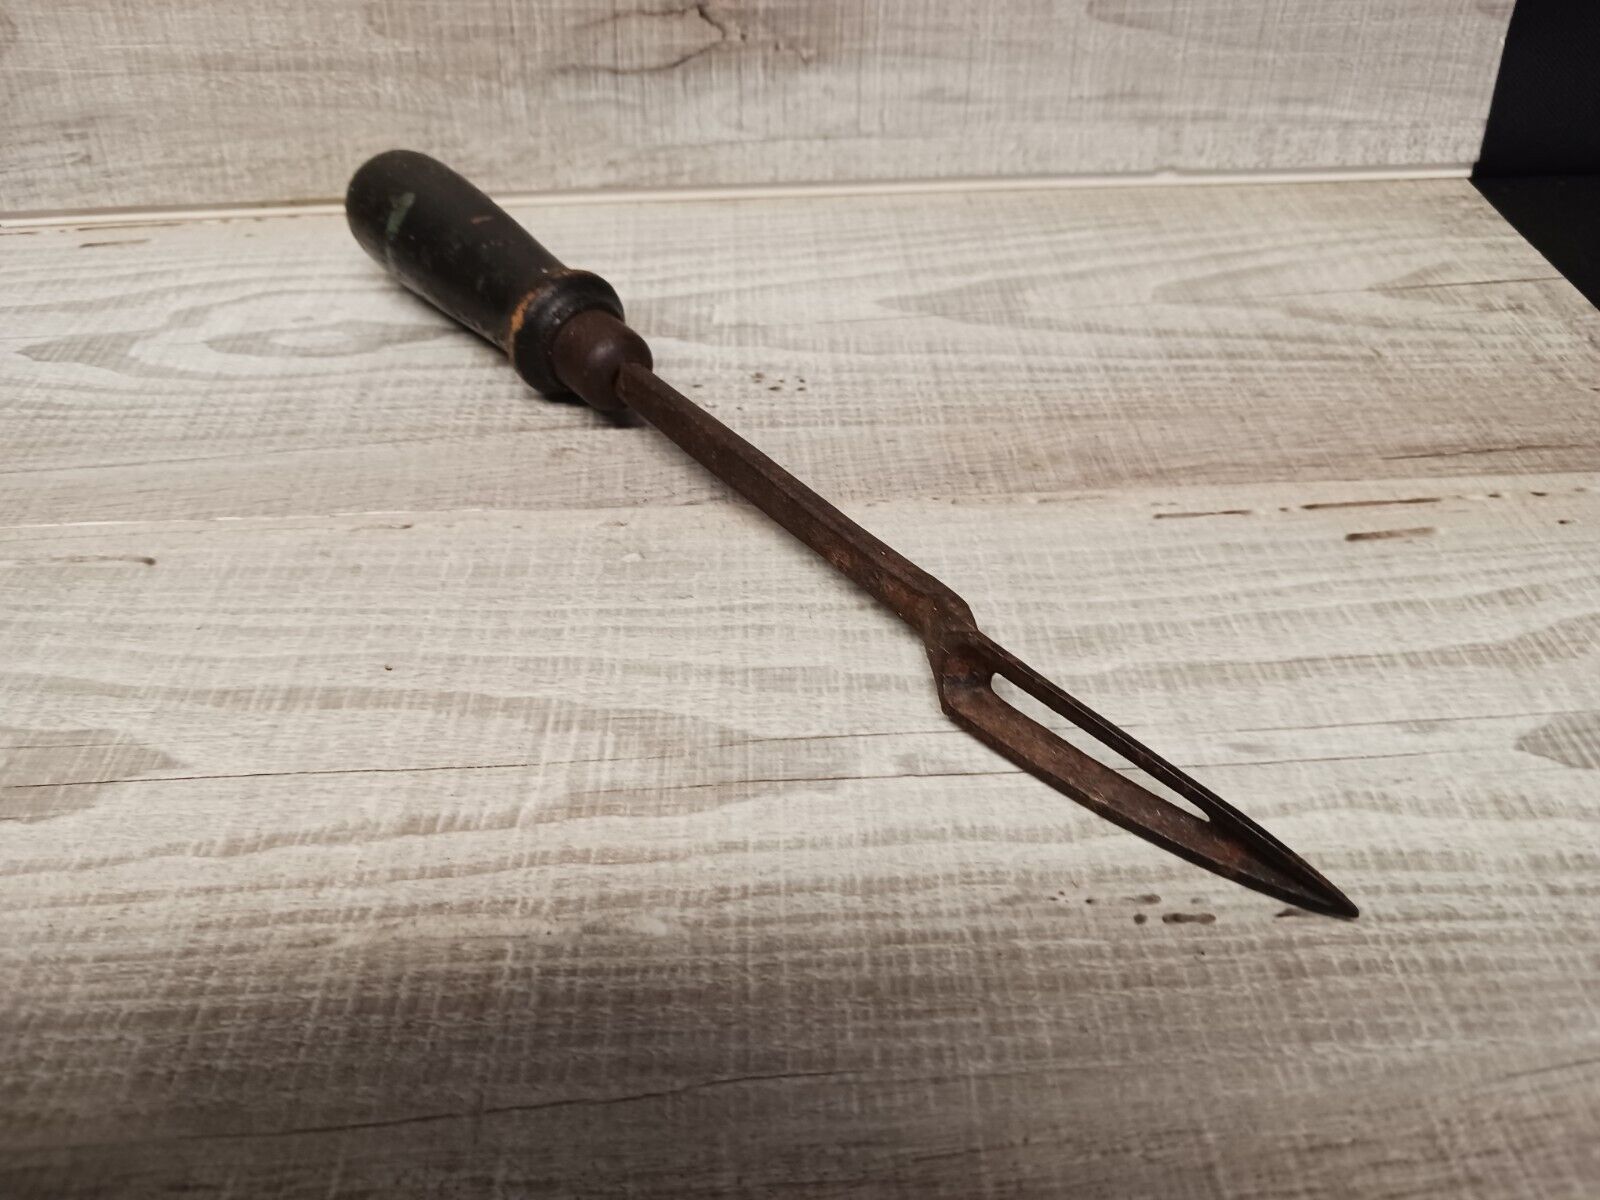 Antique Vlchek Tool Co Babbitt Bearing Scraper w Wooden Handle Cleveland OH USA